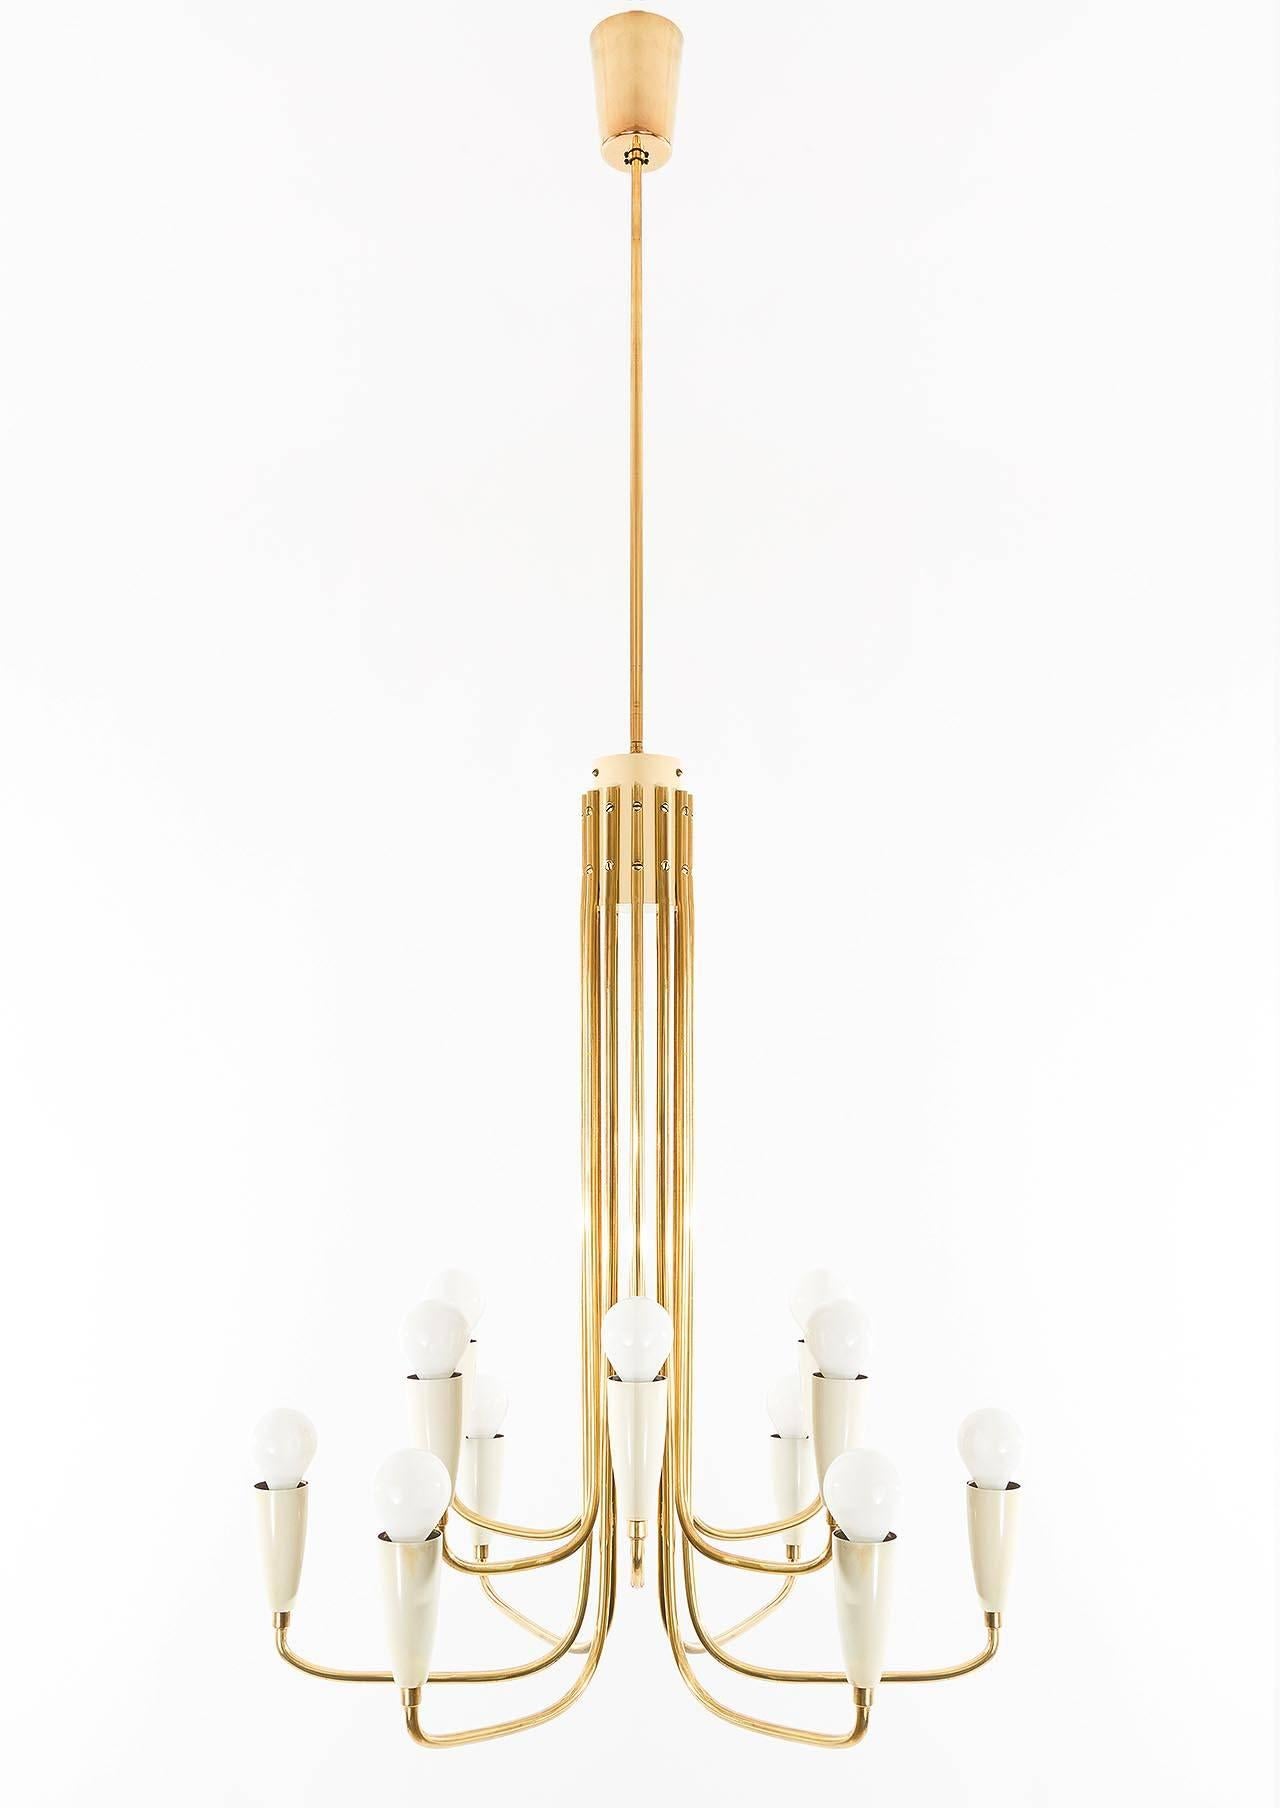 Ein wunderschöner 12-armiger Messinglüster, zugeschrieben Rupert Nikoll, Österreich, 1950er Jahre. 
Die Leuchte verfügt über 12 Fassungen für kleine Edison-Schraubsockel E14-Glühbirnen oder LEDs (max. 40 W pro Glühbirne), die mit hochwertigen